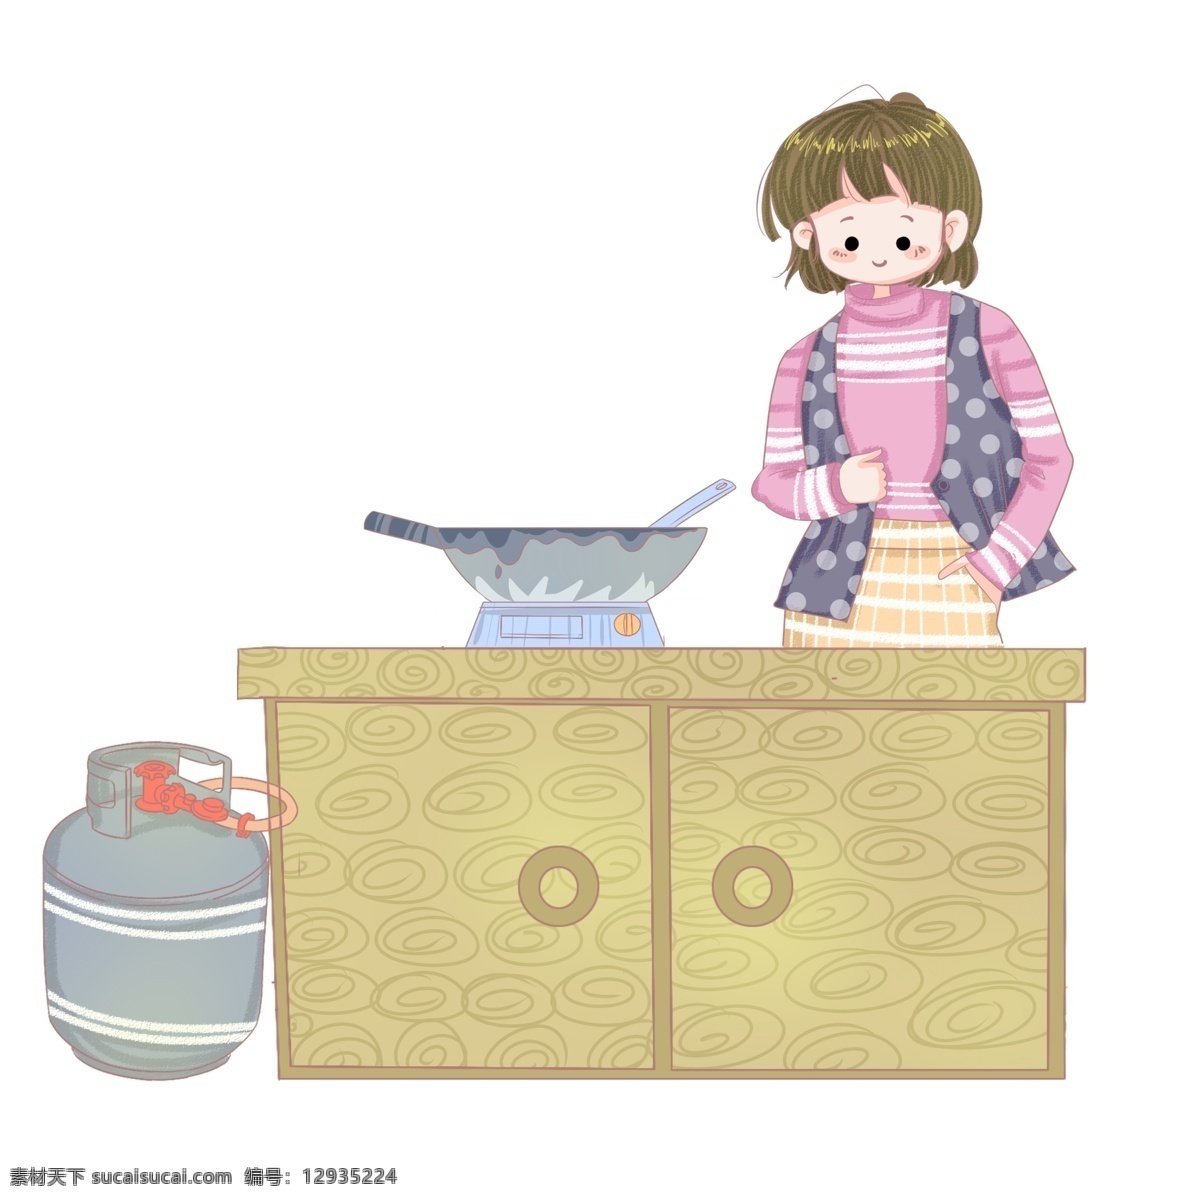 手绘 冬至 煮 饺子 插画 可爱的孩子 液化气罐子 漂亮的厨台 旺盛的炉火 美味的饺子 手绘冬至插画